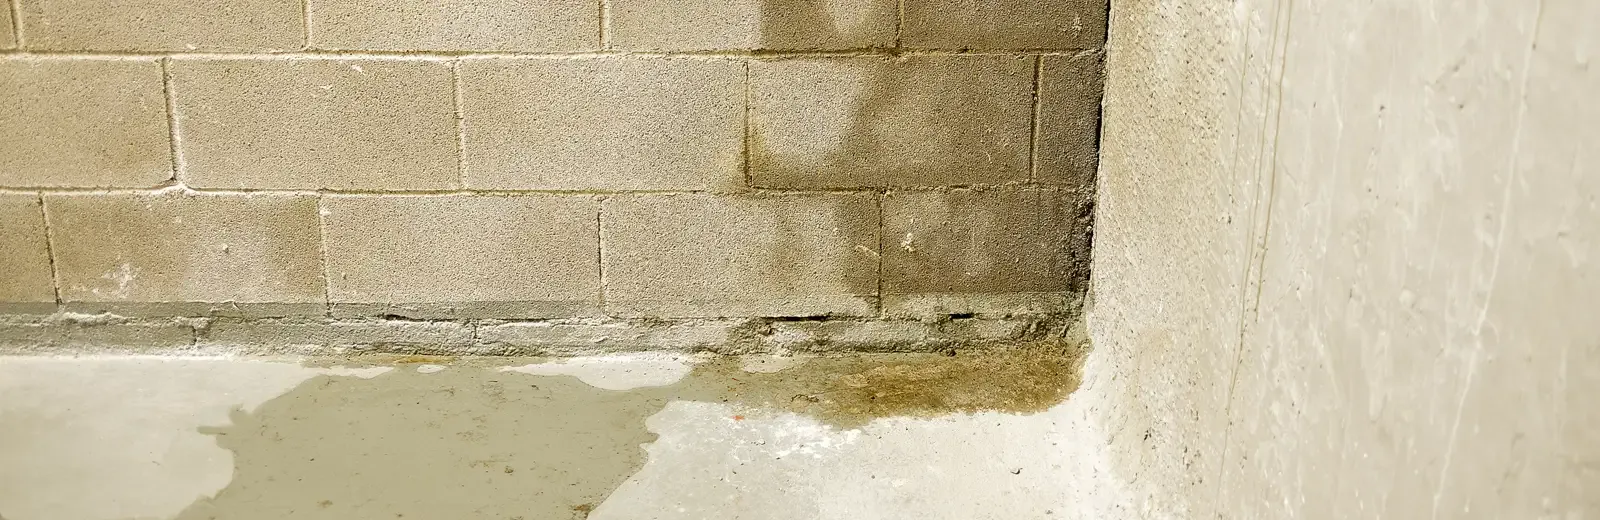 moisture problems cinder block wall